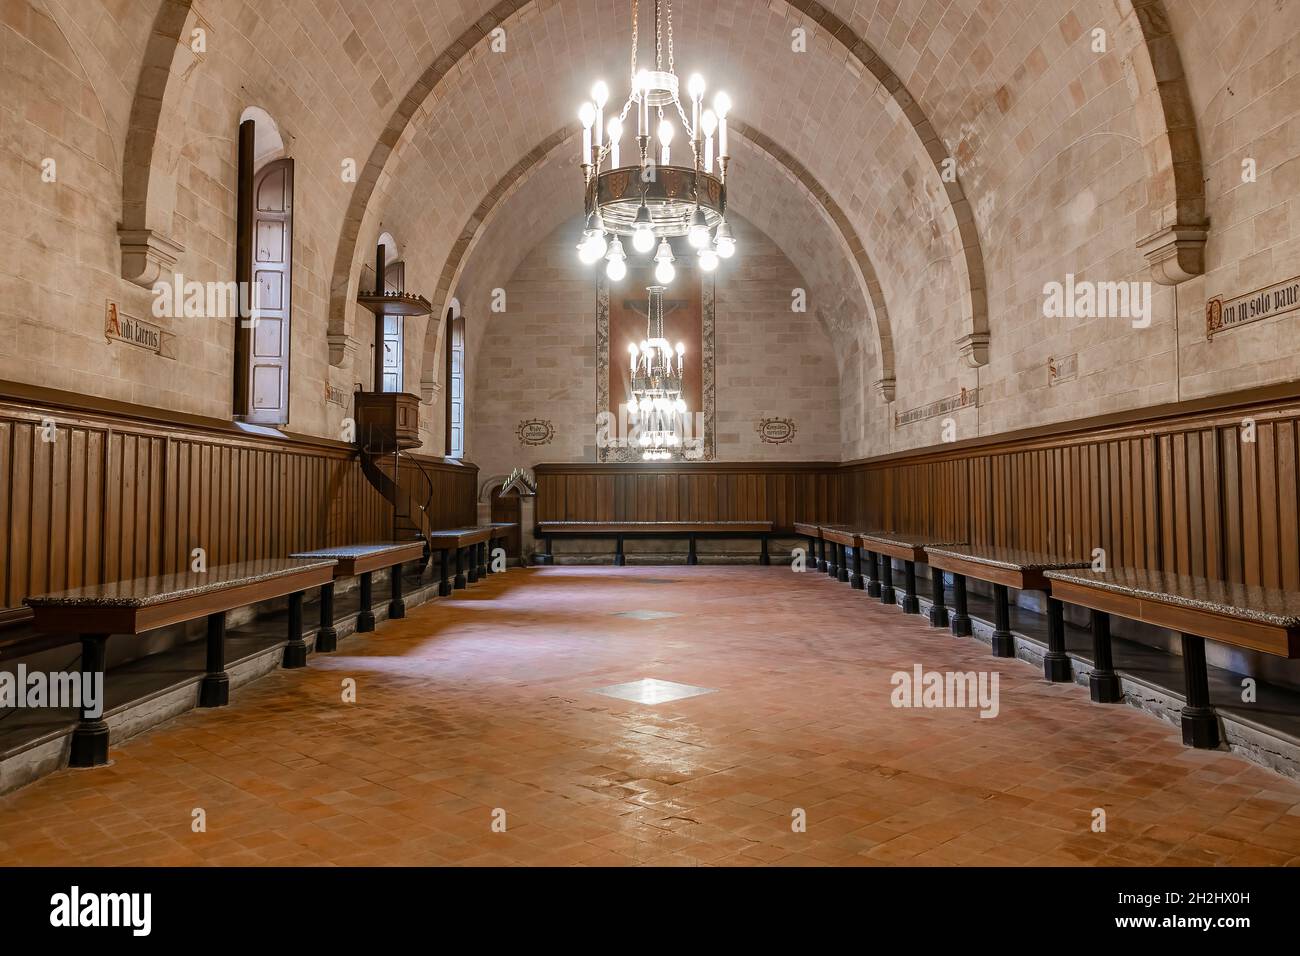 Barcelone, Espagne - 24 septembre 2021 : salle à manger à l'intérieur du monastère de Pedralbes.C'est l'une des zones du monastère qui reflète le mieux les pas Banque D'Images